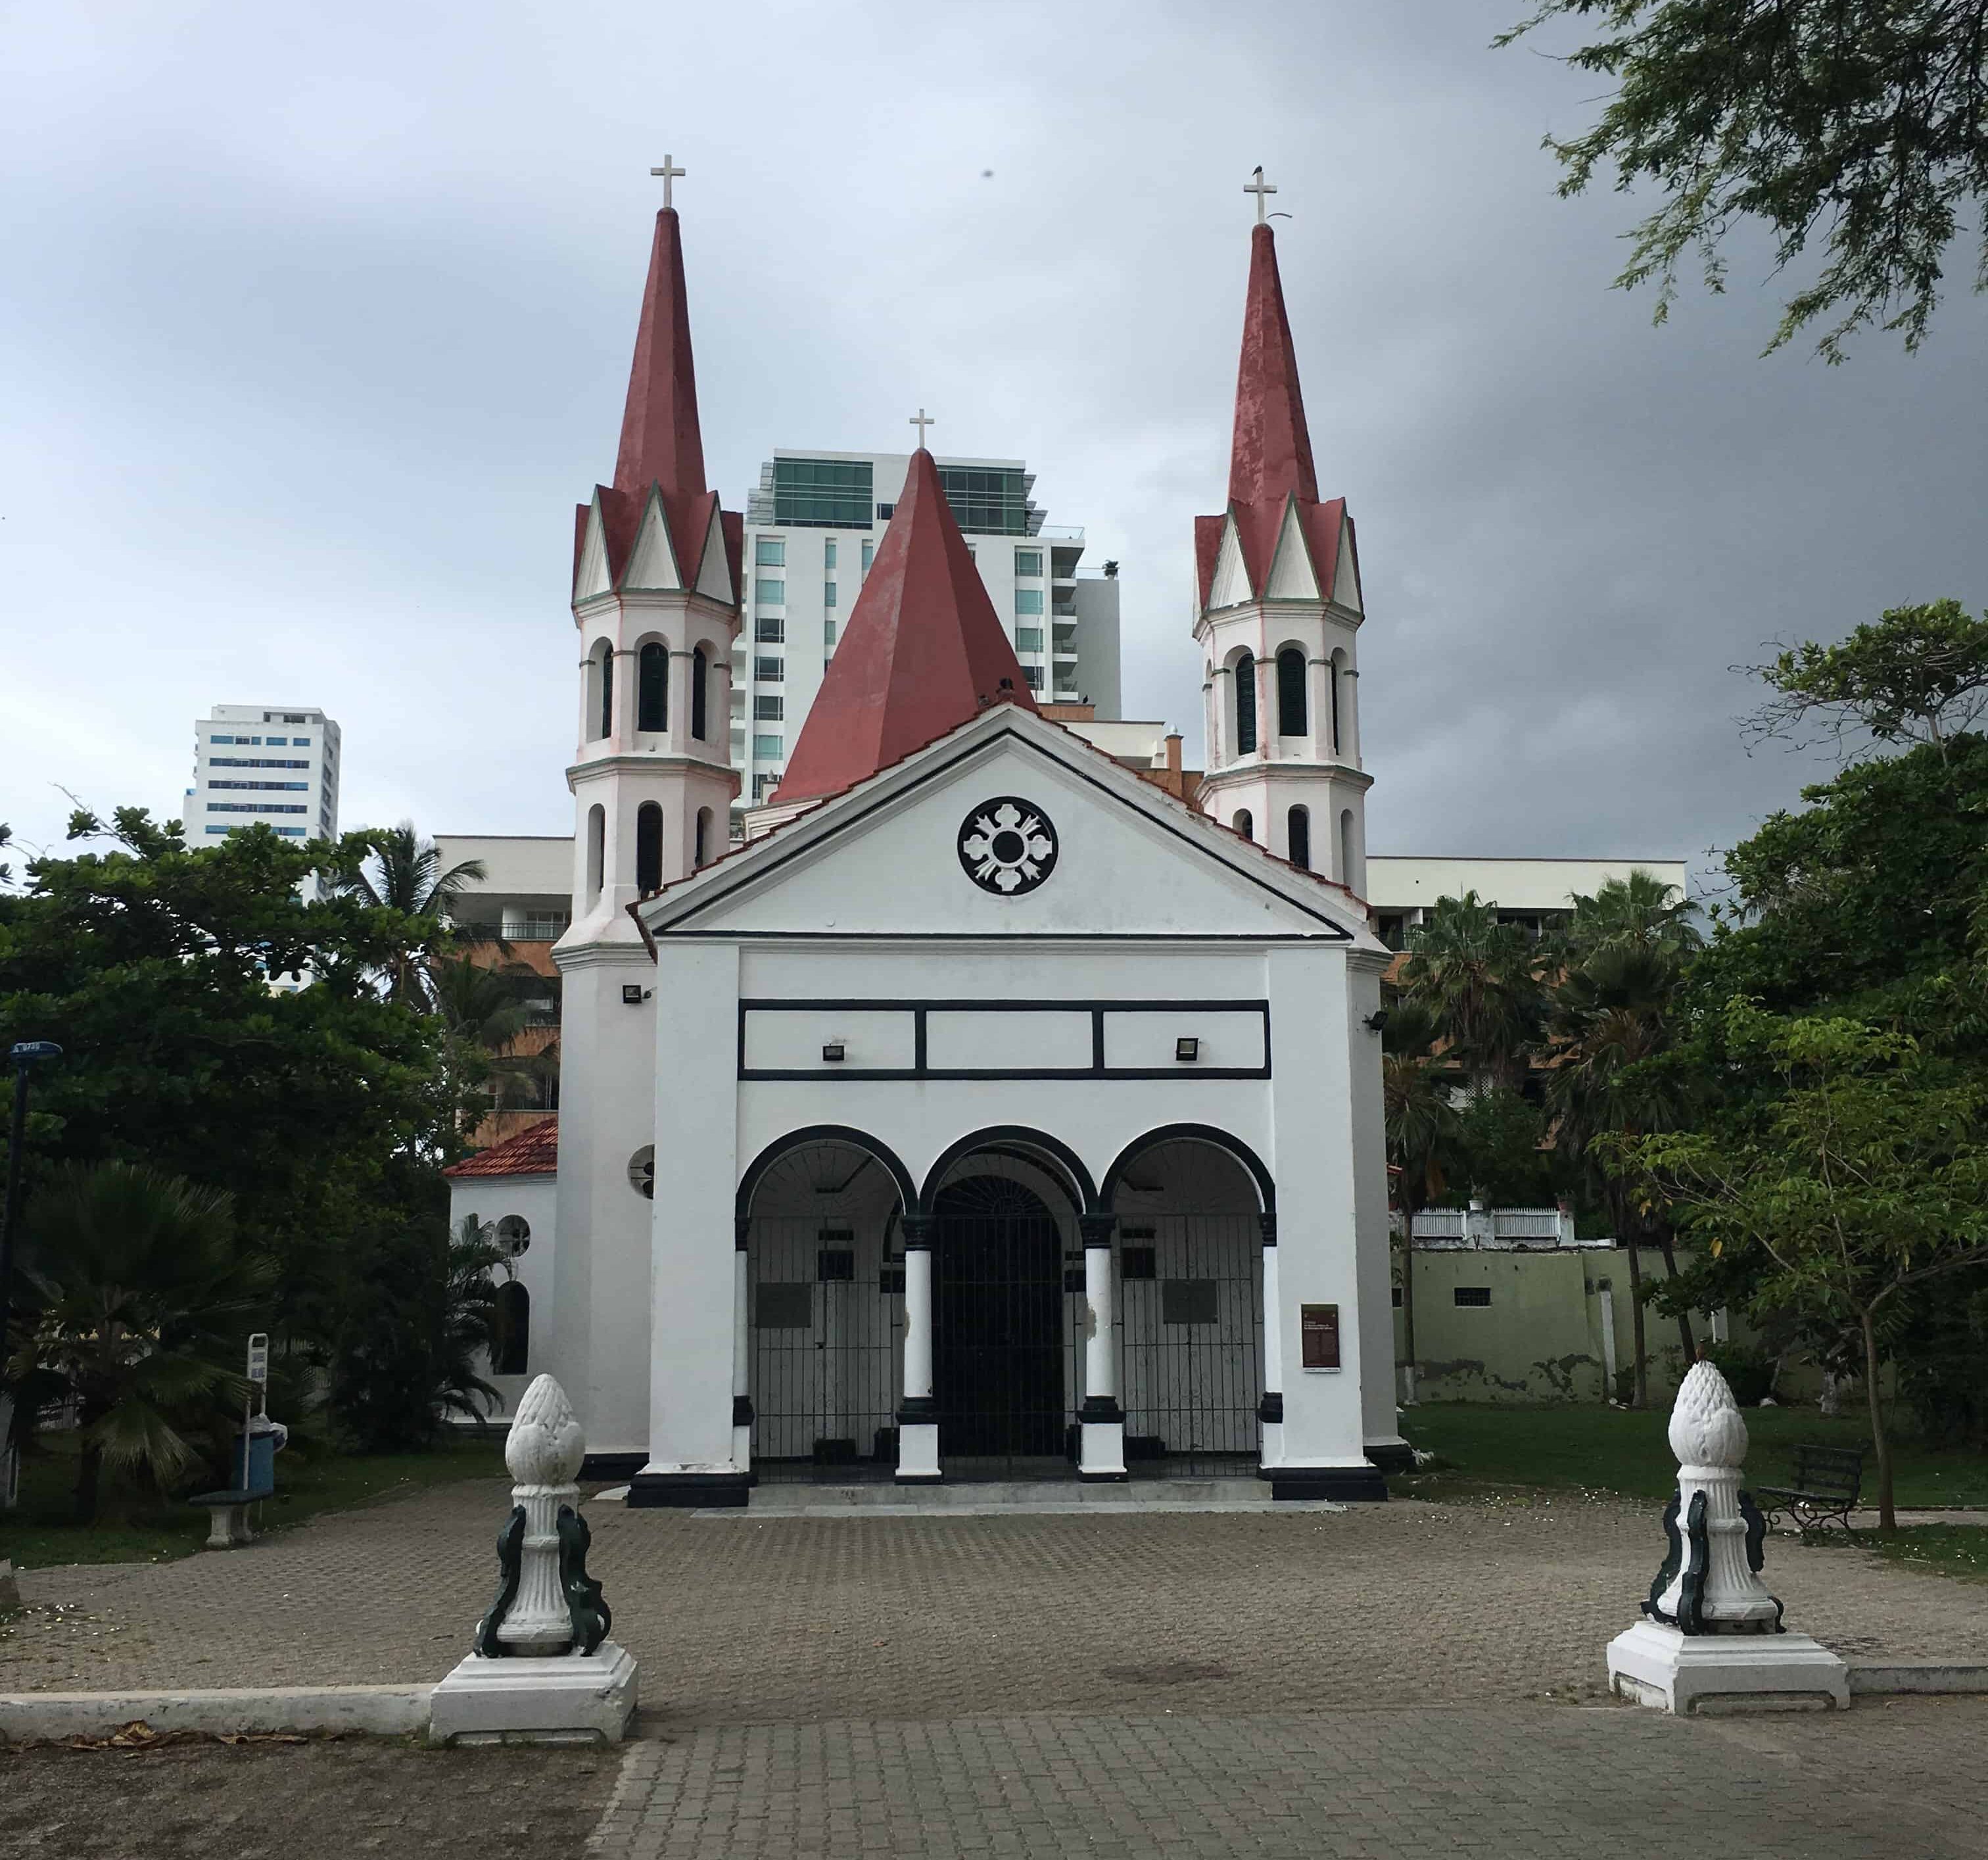 Cabrero Hermitage in Cartagena, Colombia